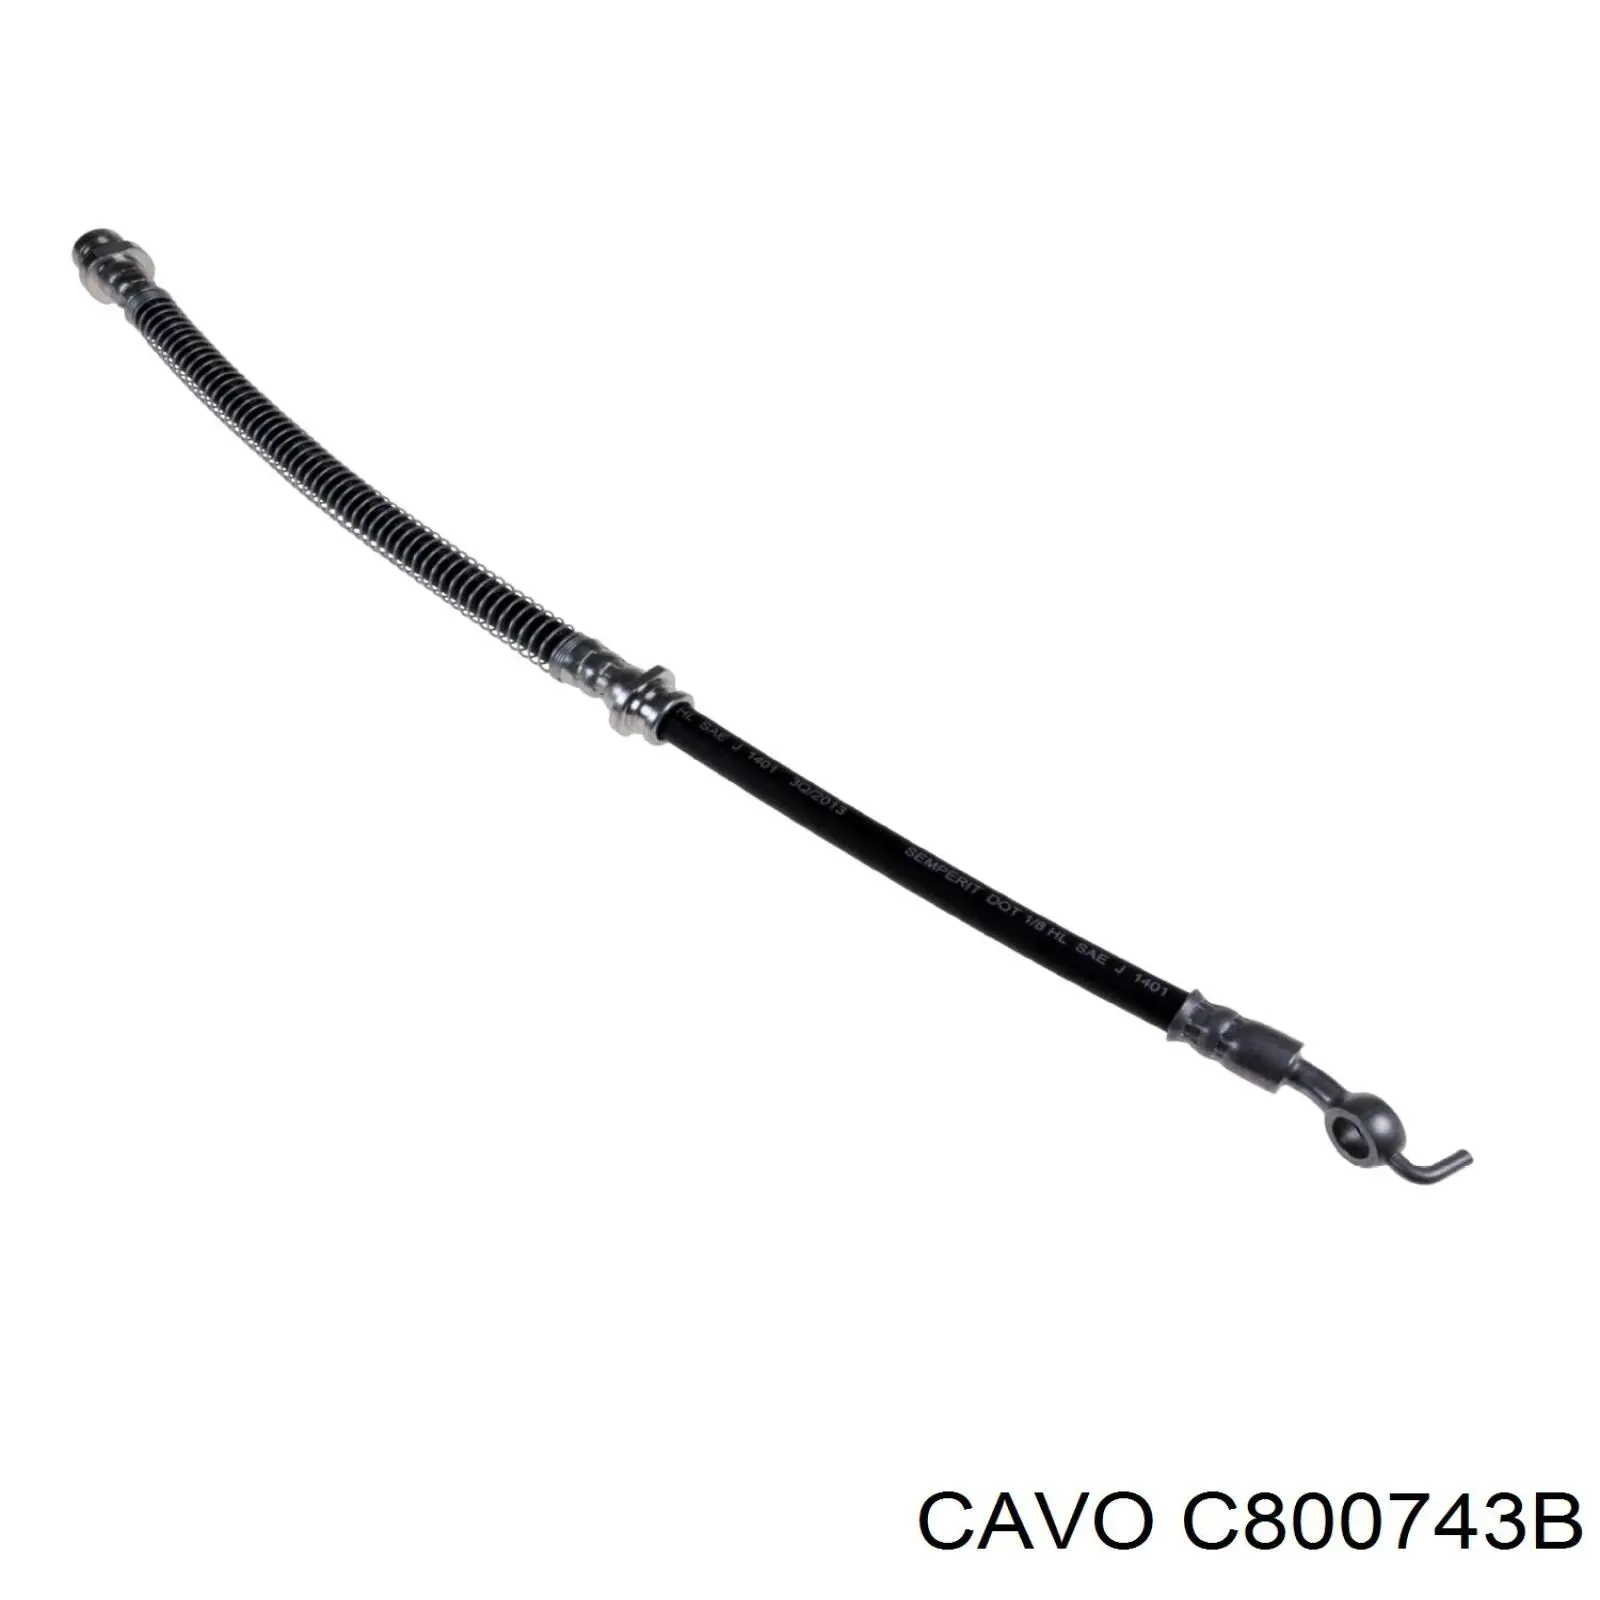 C800 743B Cavo шланг тормозной передний